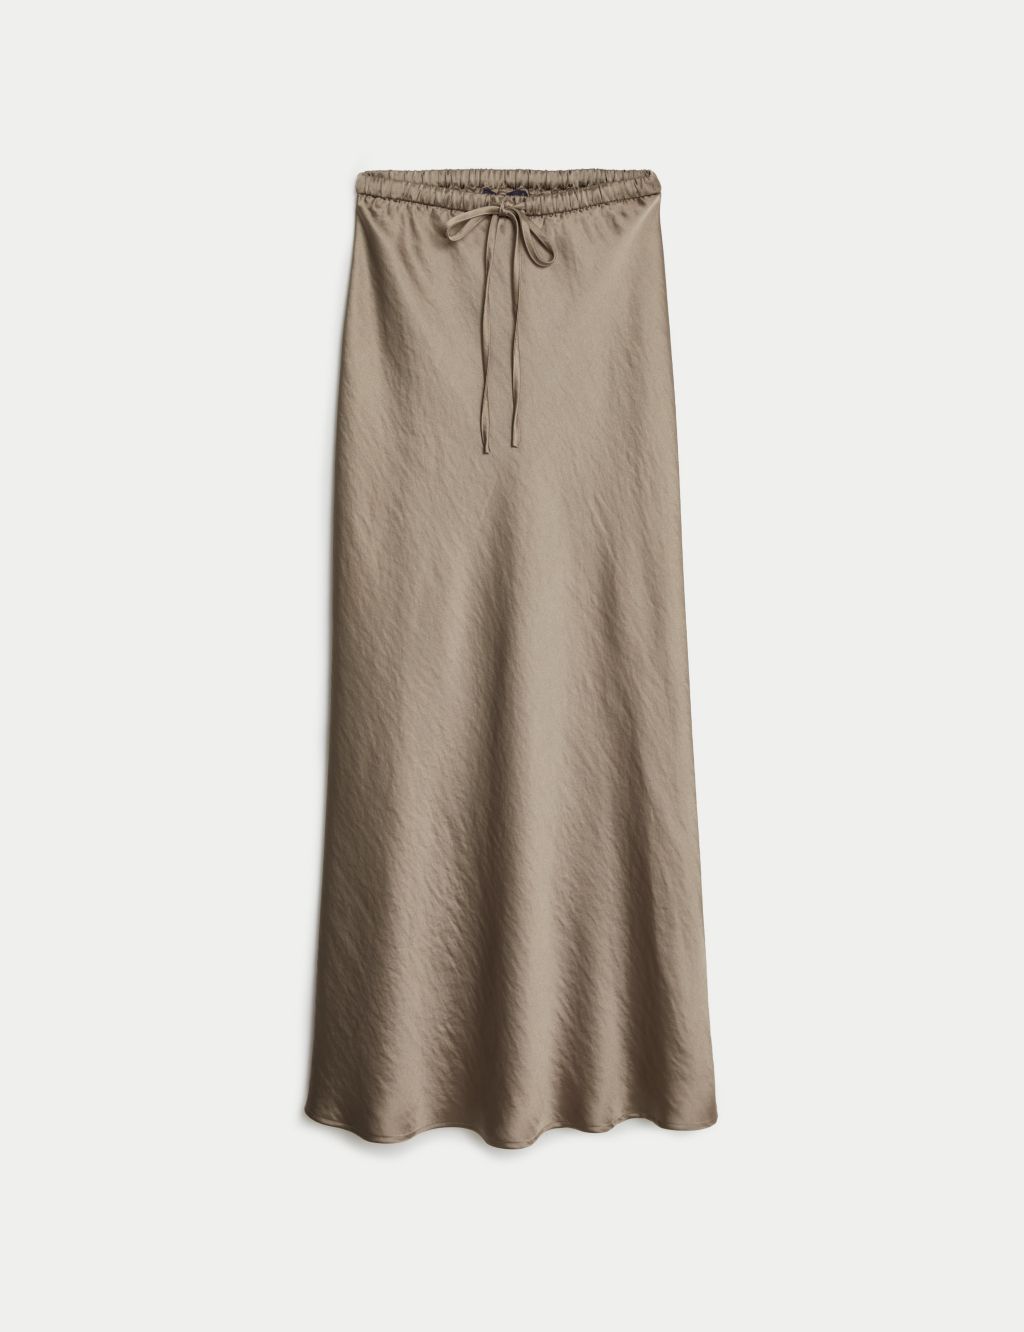 Satin Midaxi Slip Skirt 1 of 5